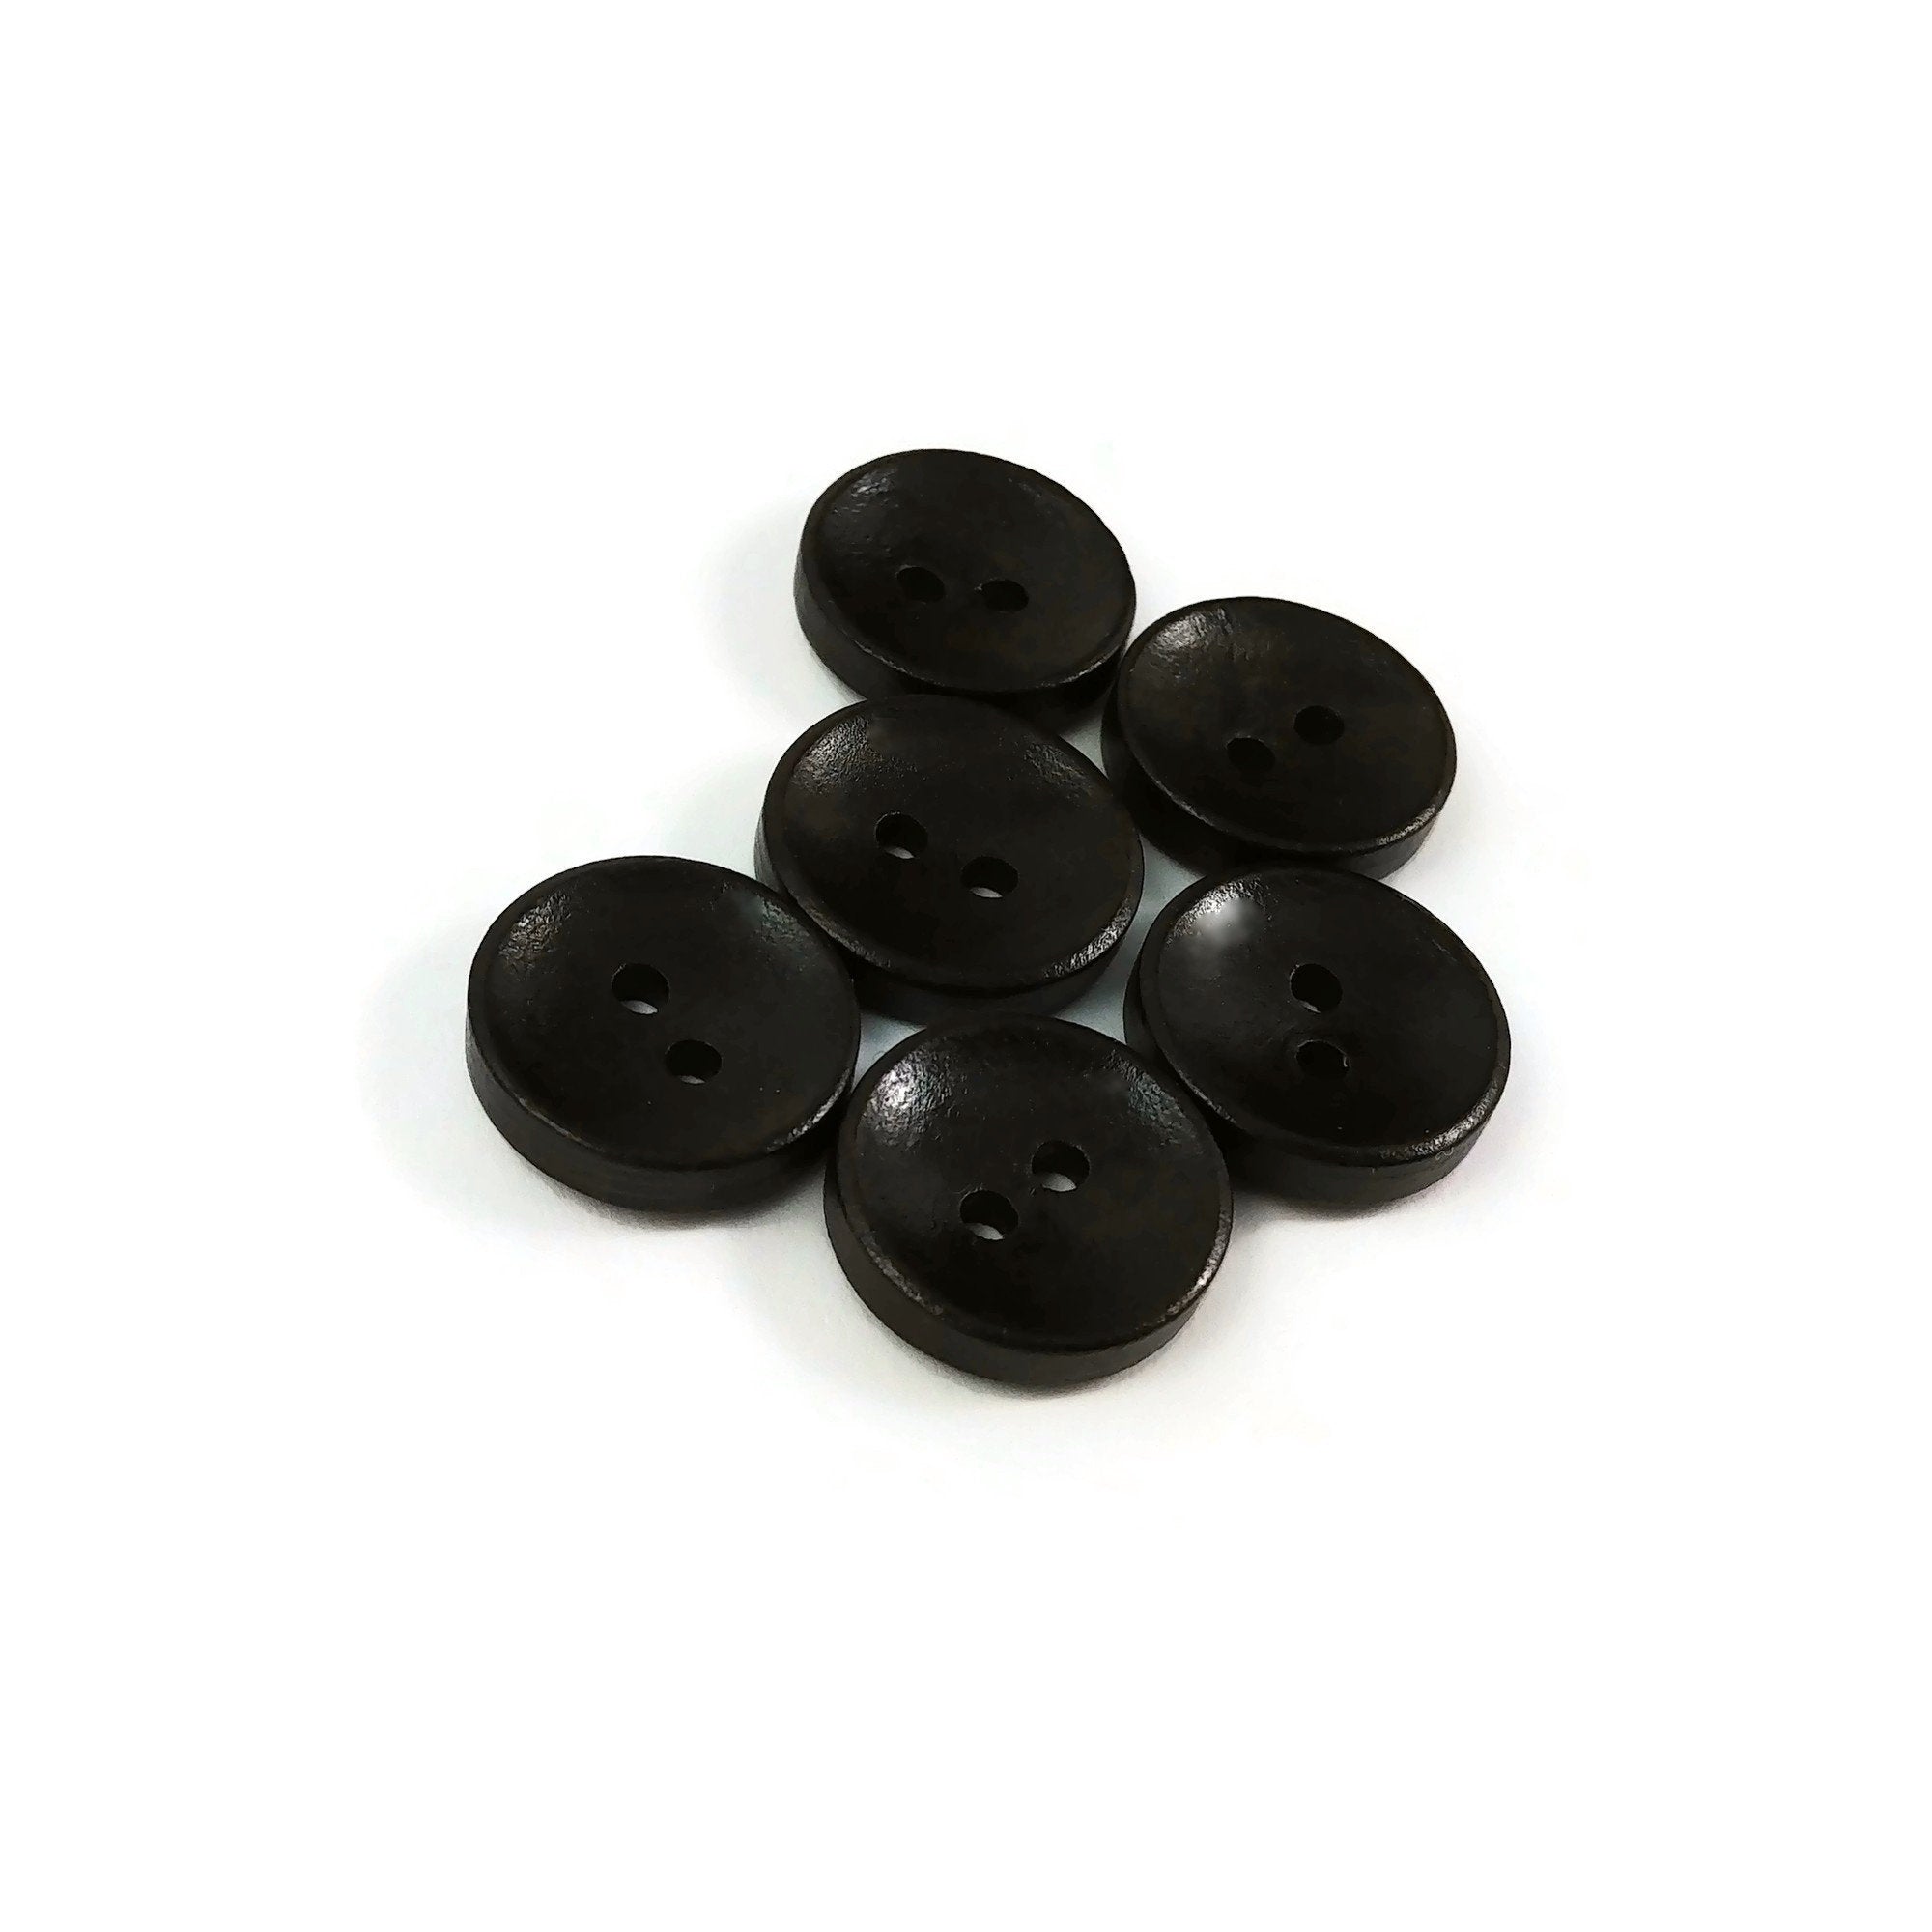 Buttons, Wood Buttons, Brown Buttons, Large Wood Buttons, Dark Buttons,  Ephemera, Junk Journal Supplies, Mixed Media Supplies 